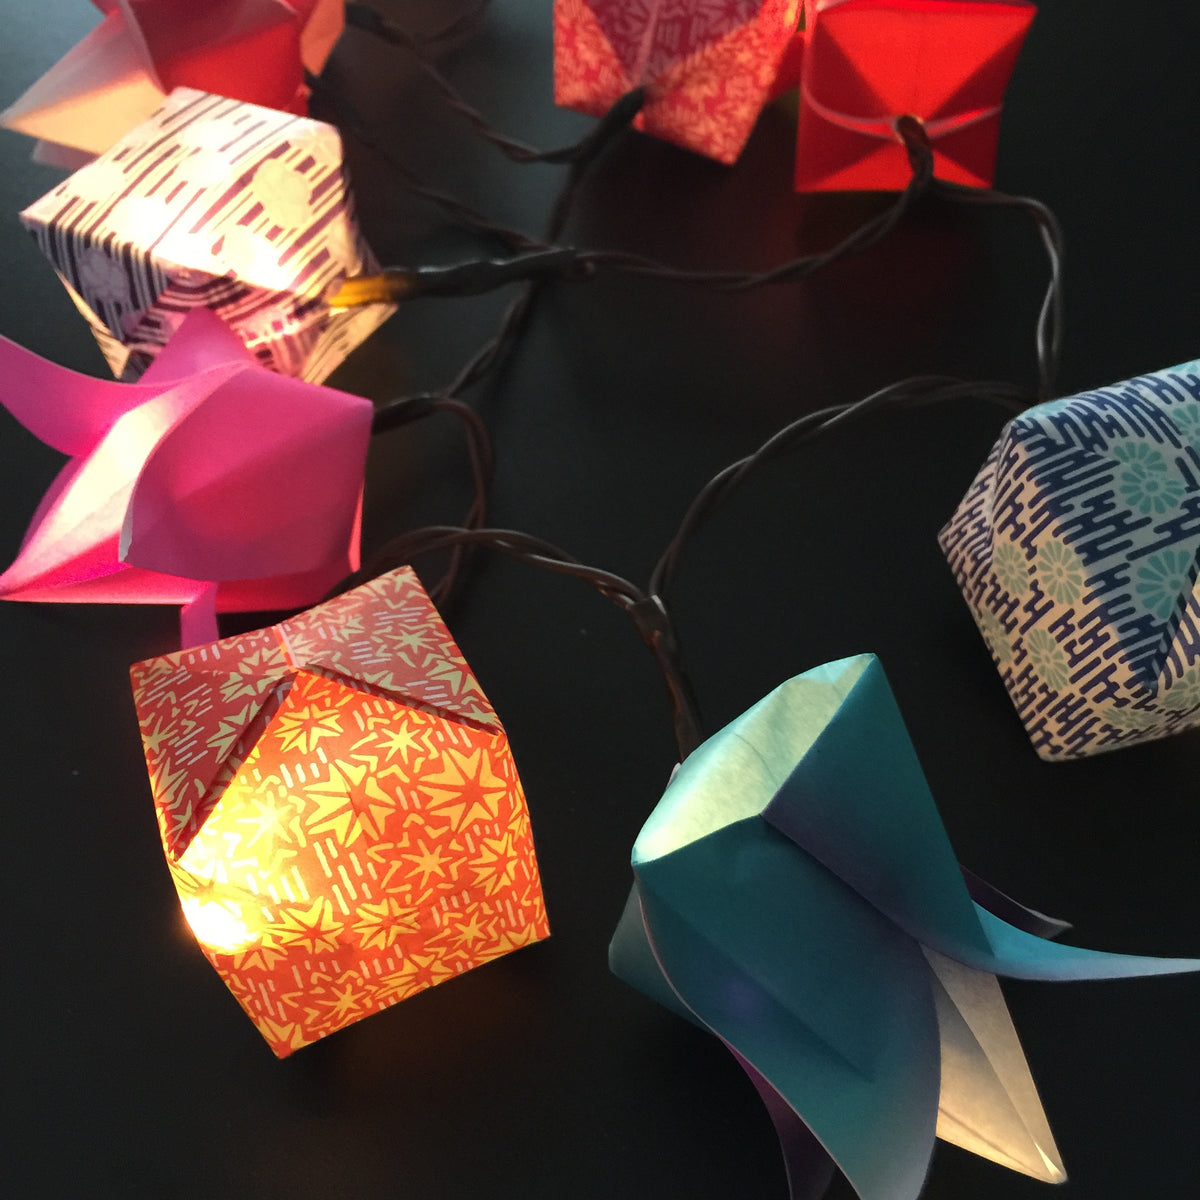 Yasutomo Mineral Origami Paper